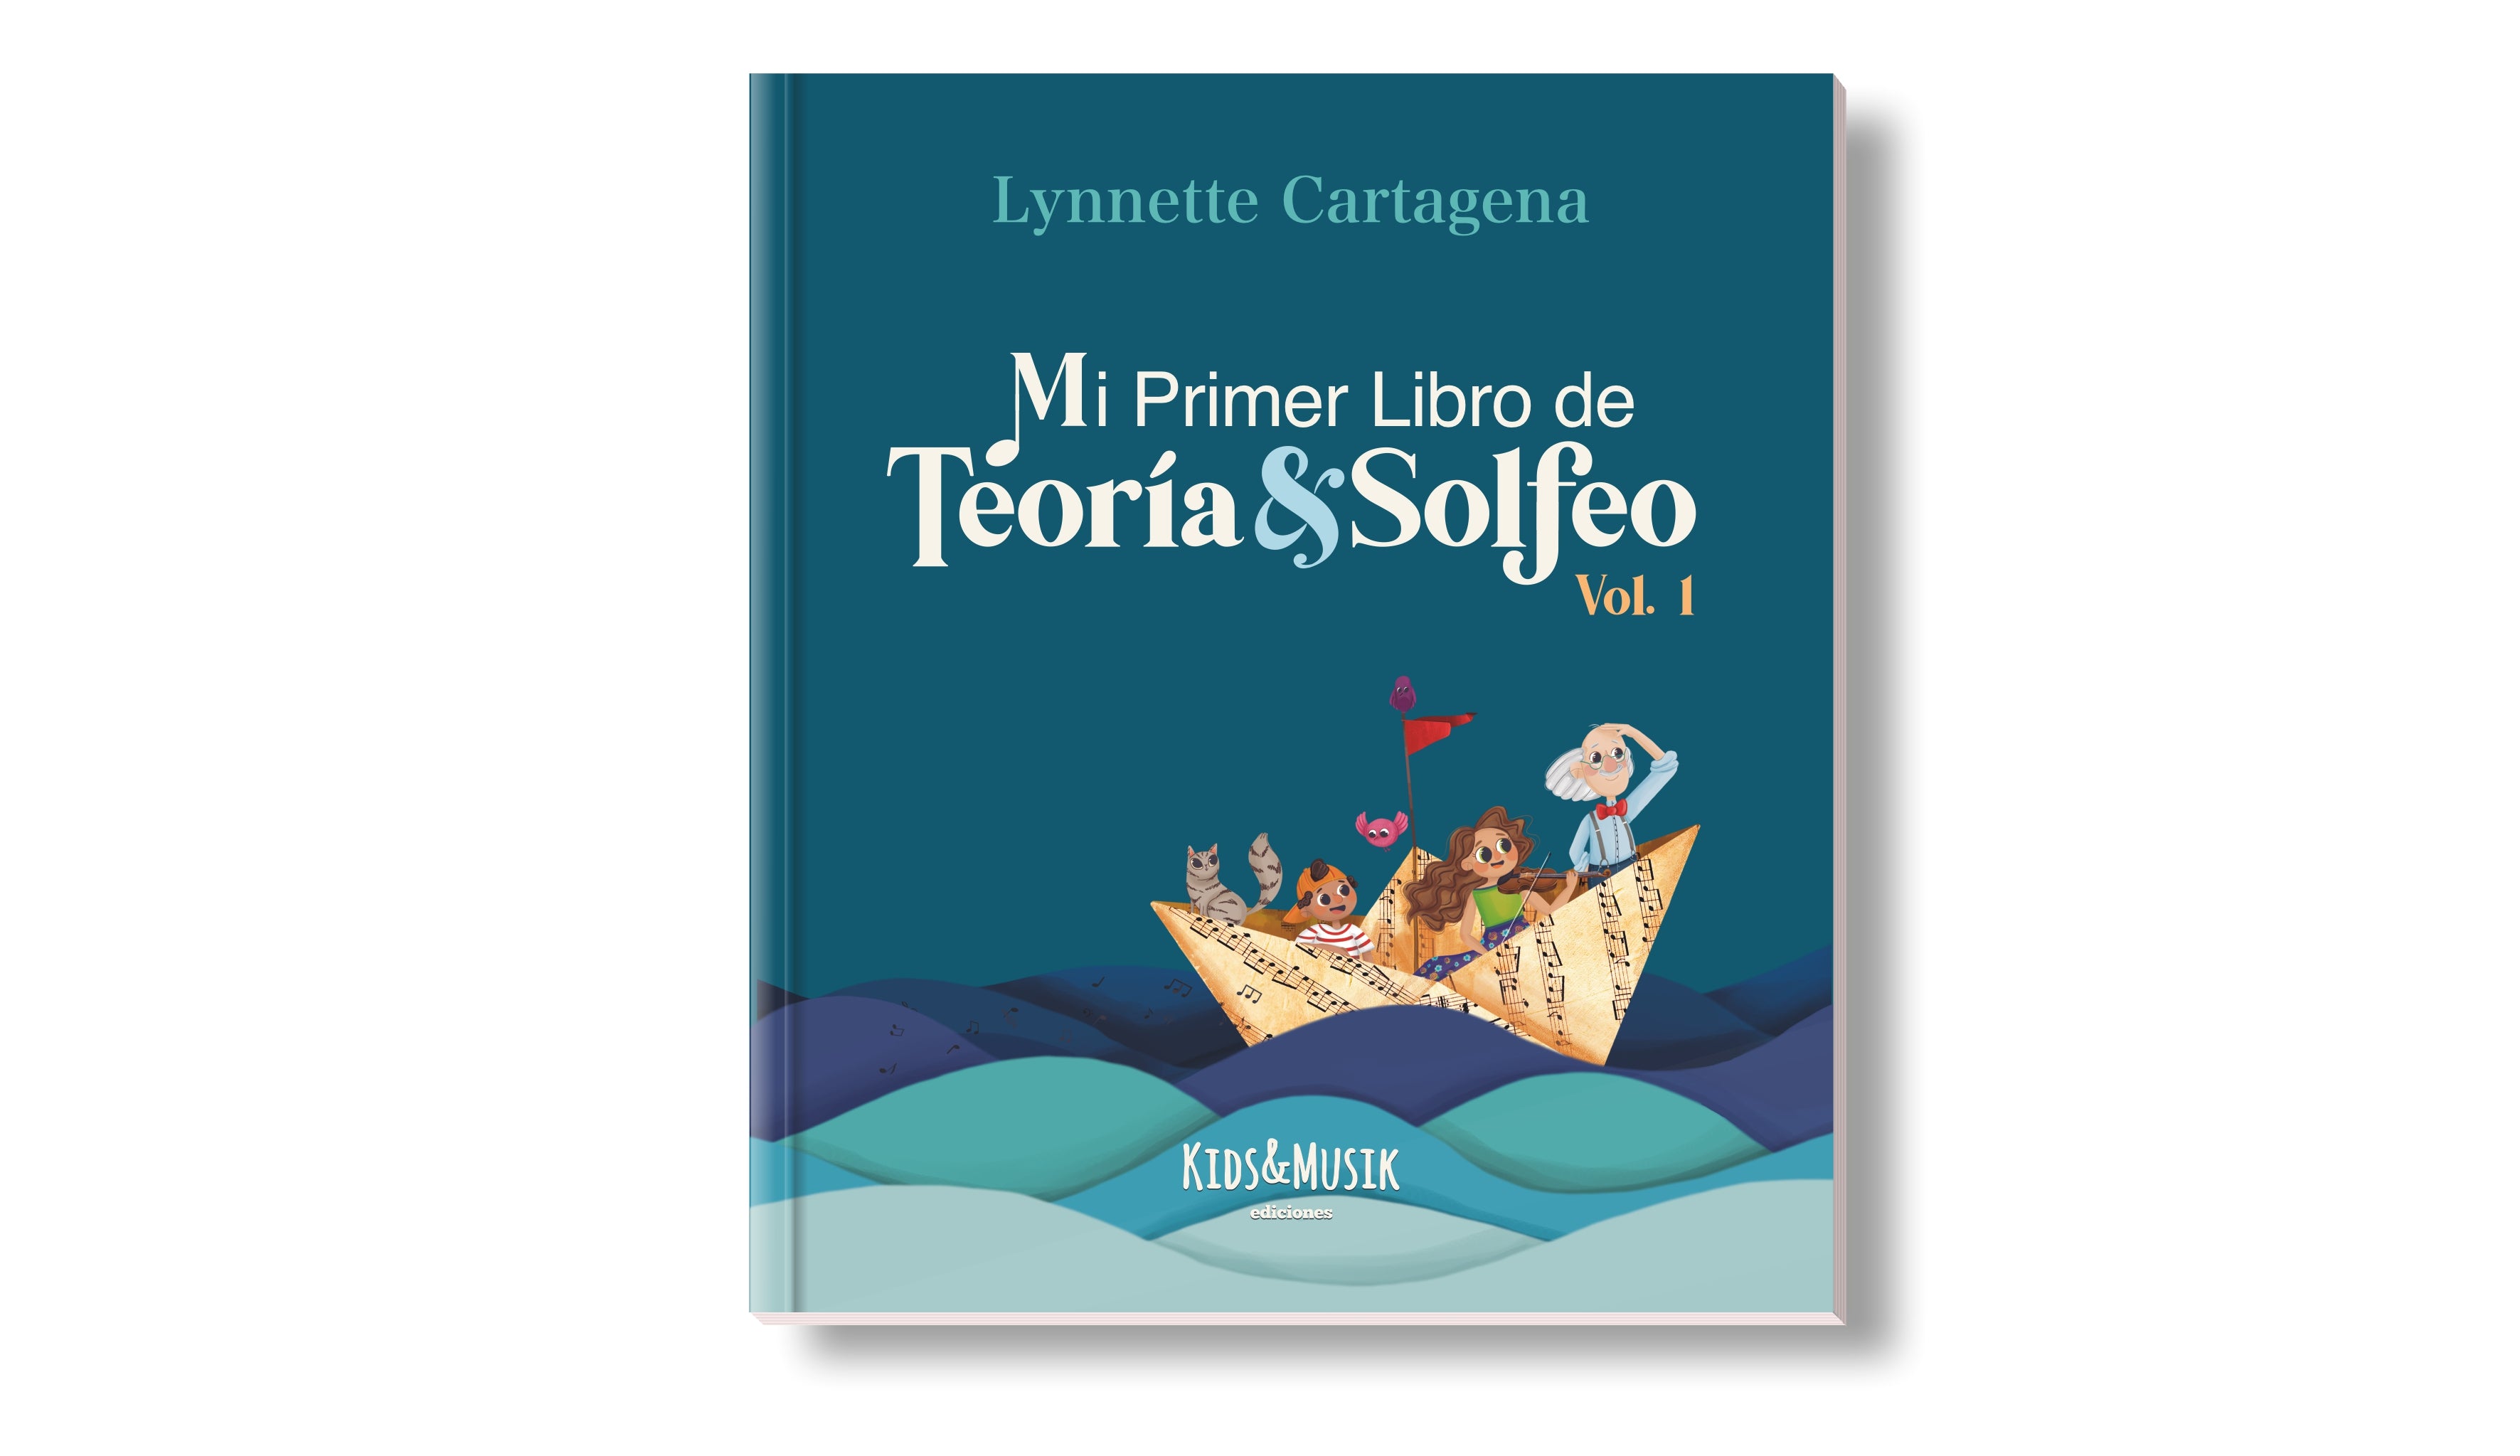 Mi Primer Libro de Teoría y Solfeo Vol.1 Lynette Cartagena - New Version